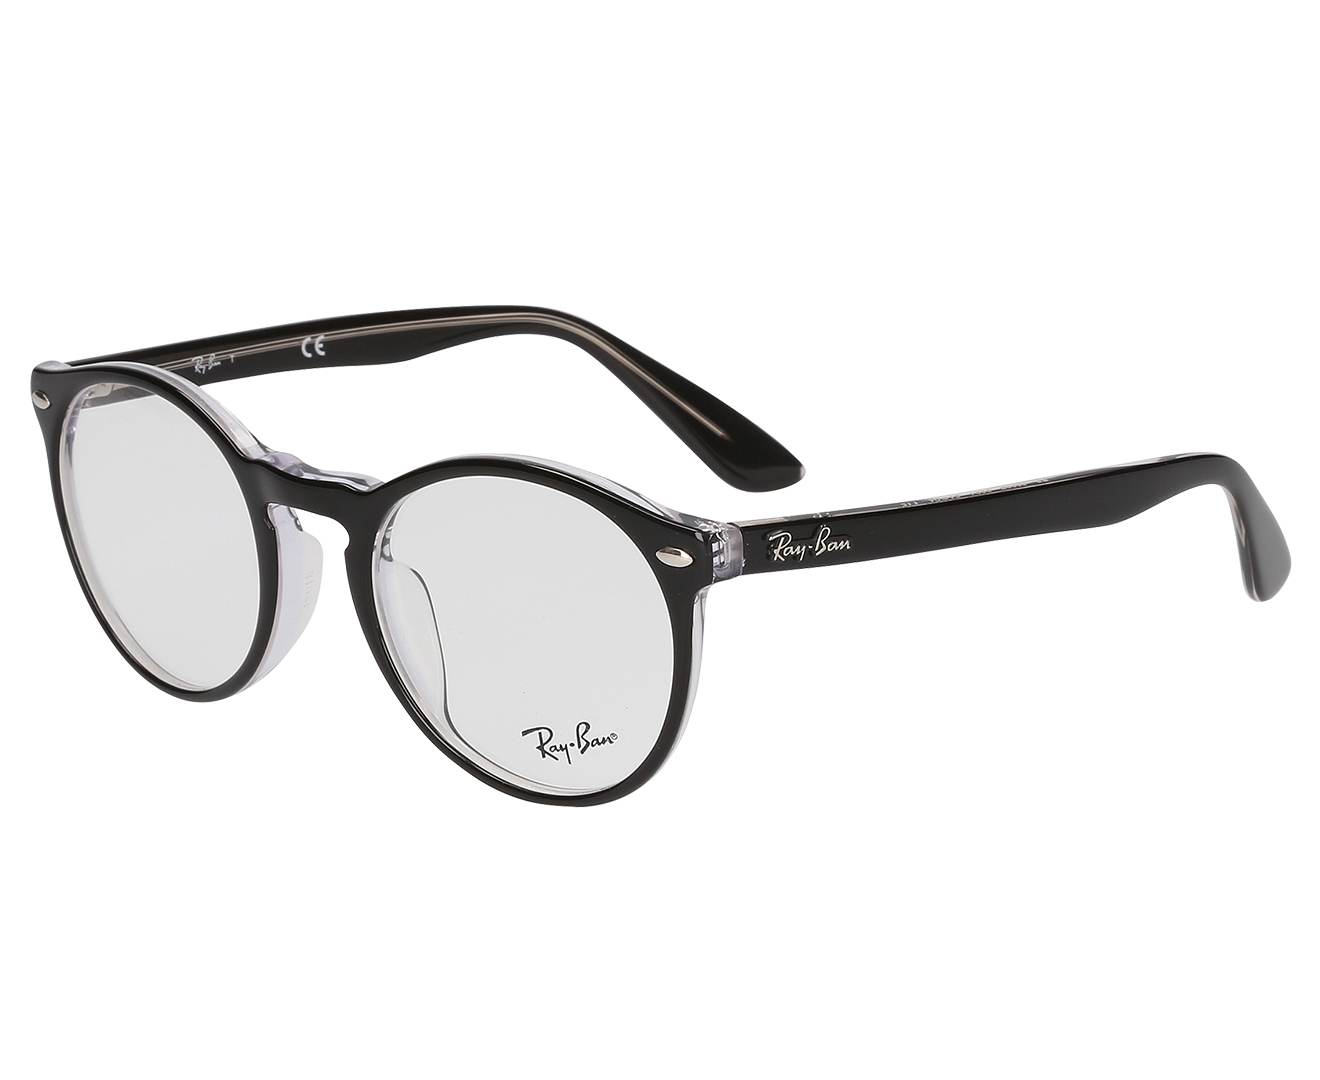 Ray Ban Asian Fit Prescription Acetate Frame Eyewear Men Women Eye Glasses Black Ebay